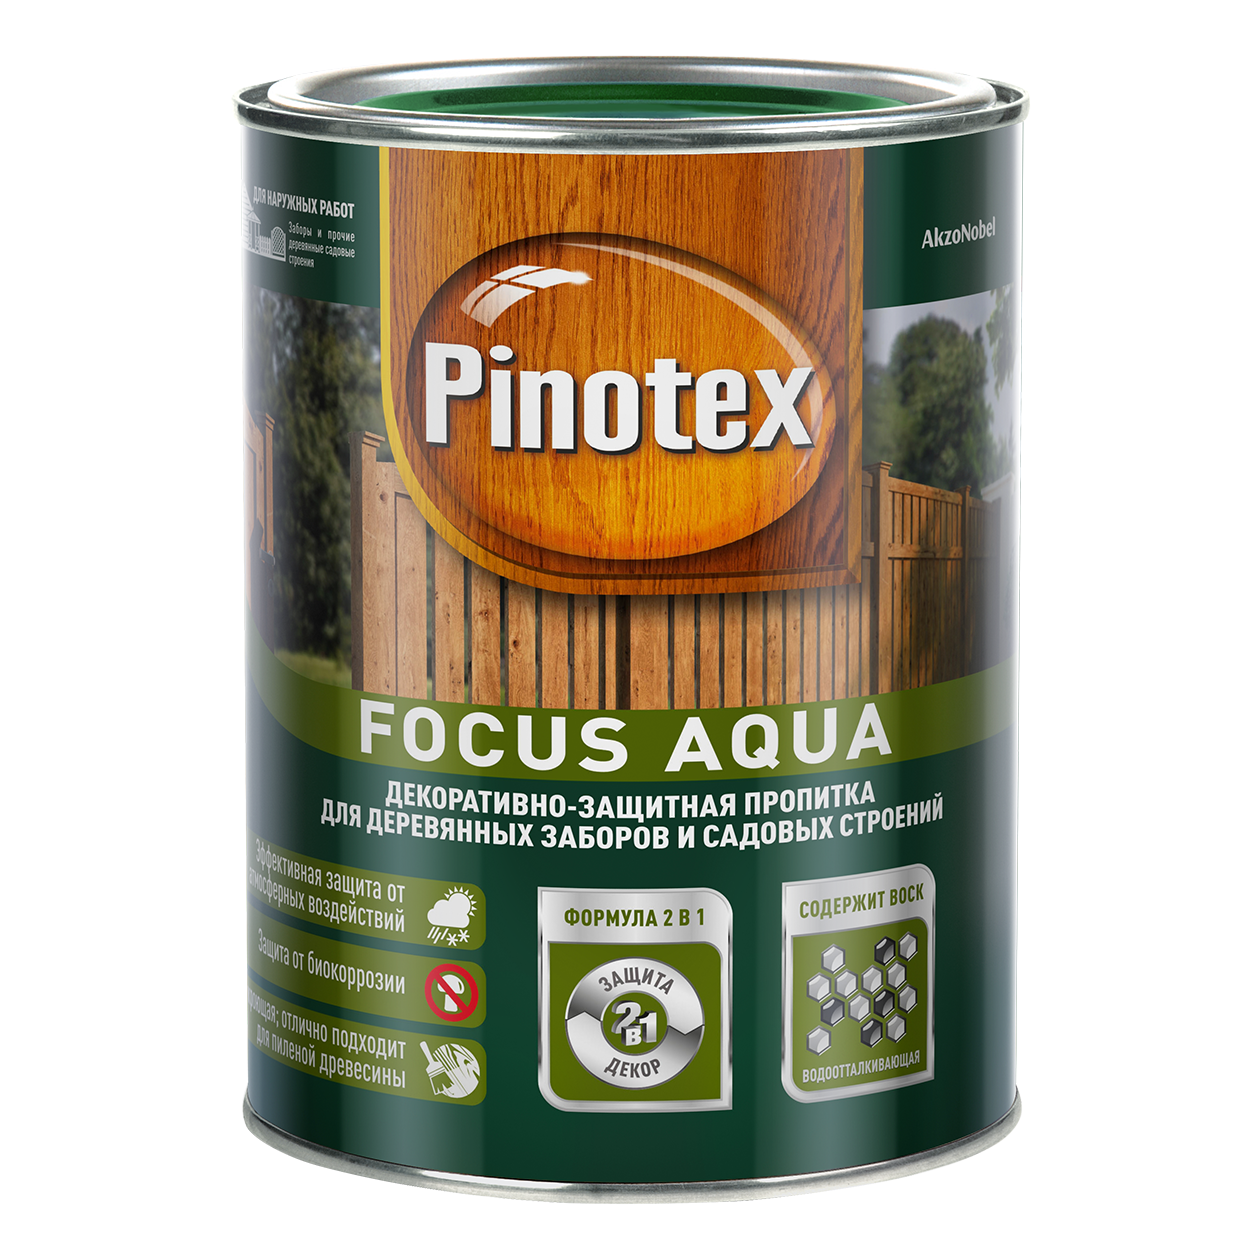 Pinotex Focus Aqua, Рябина, 2,5л., декоративно-защитная пропитка